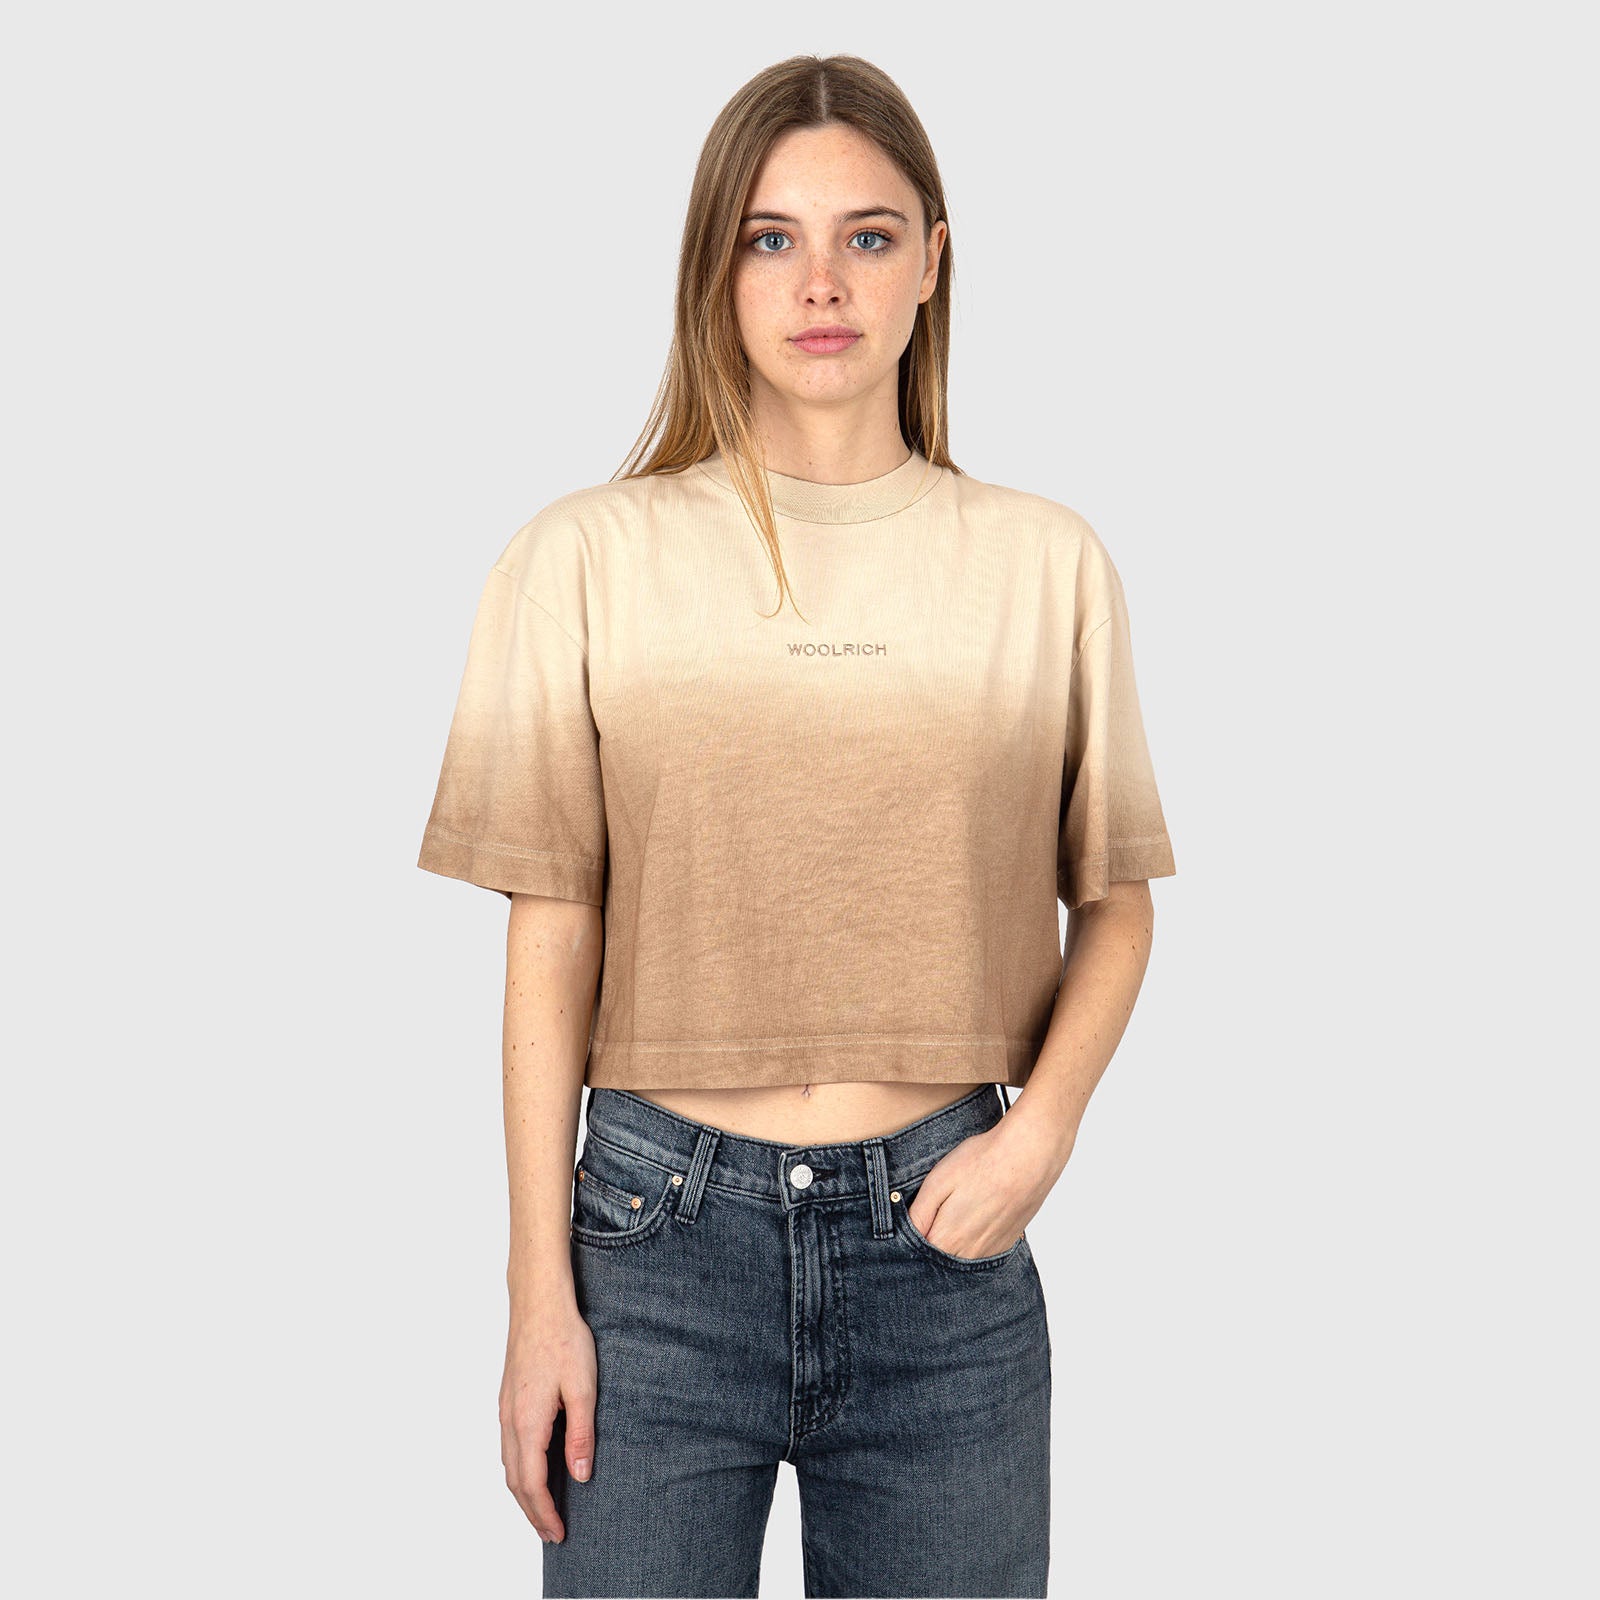 Woolrich T-Shirt Tye Dye Cotone Beige - 6